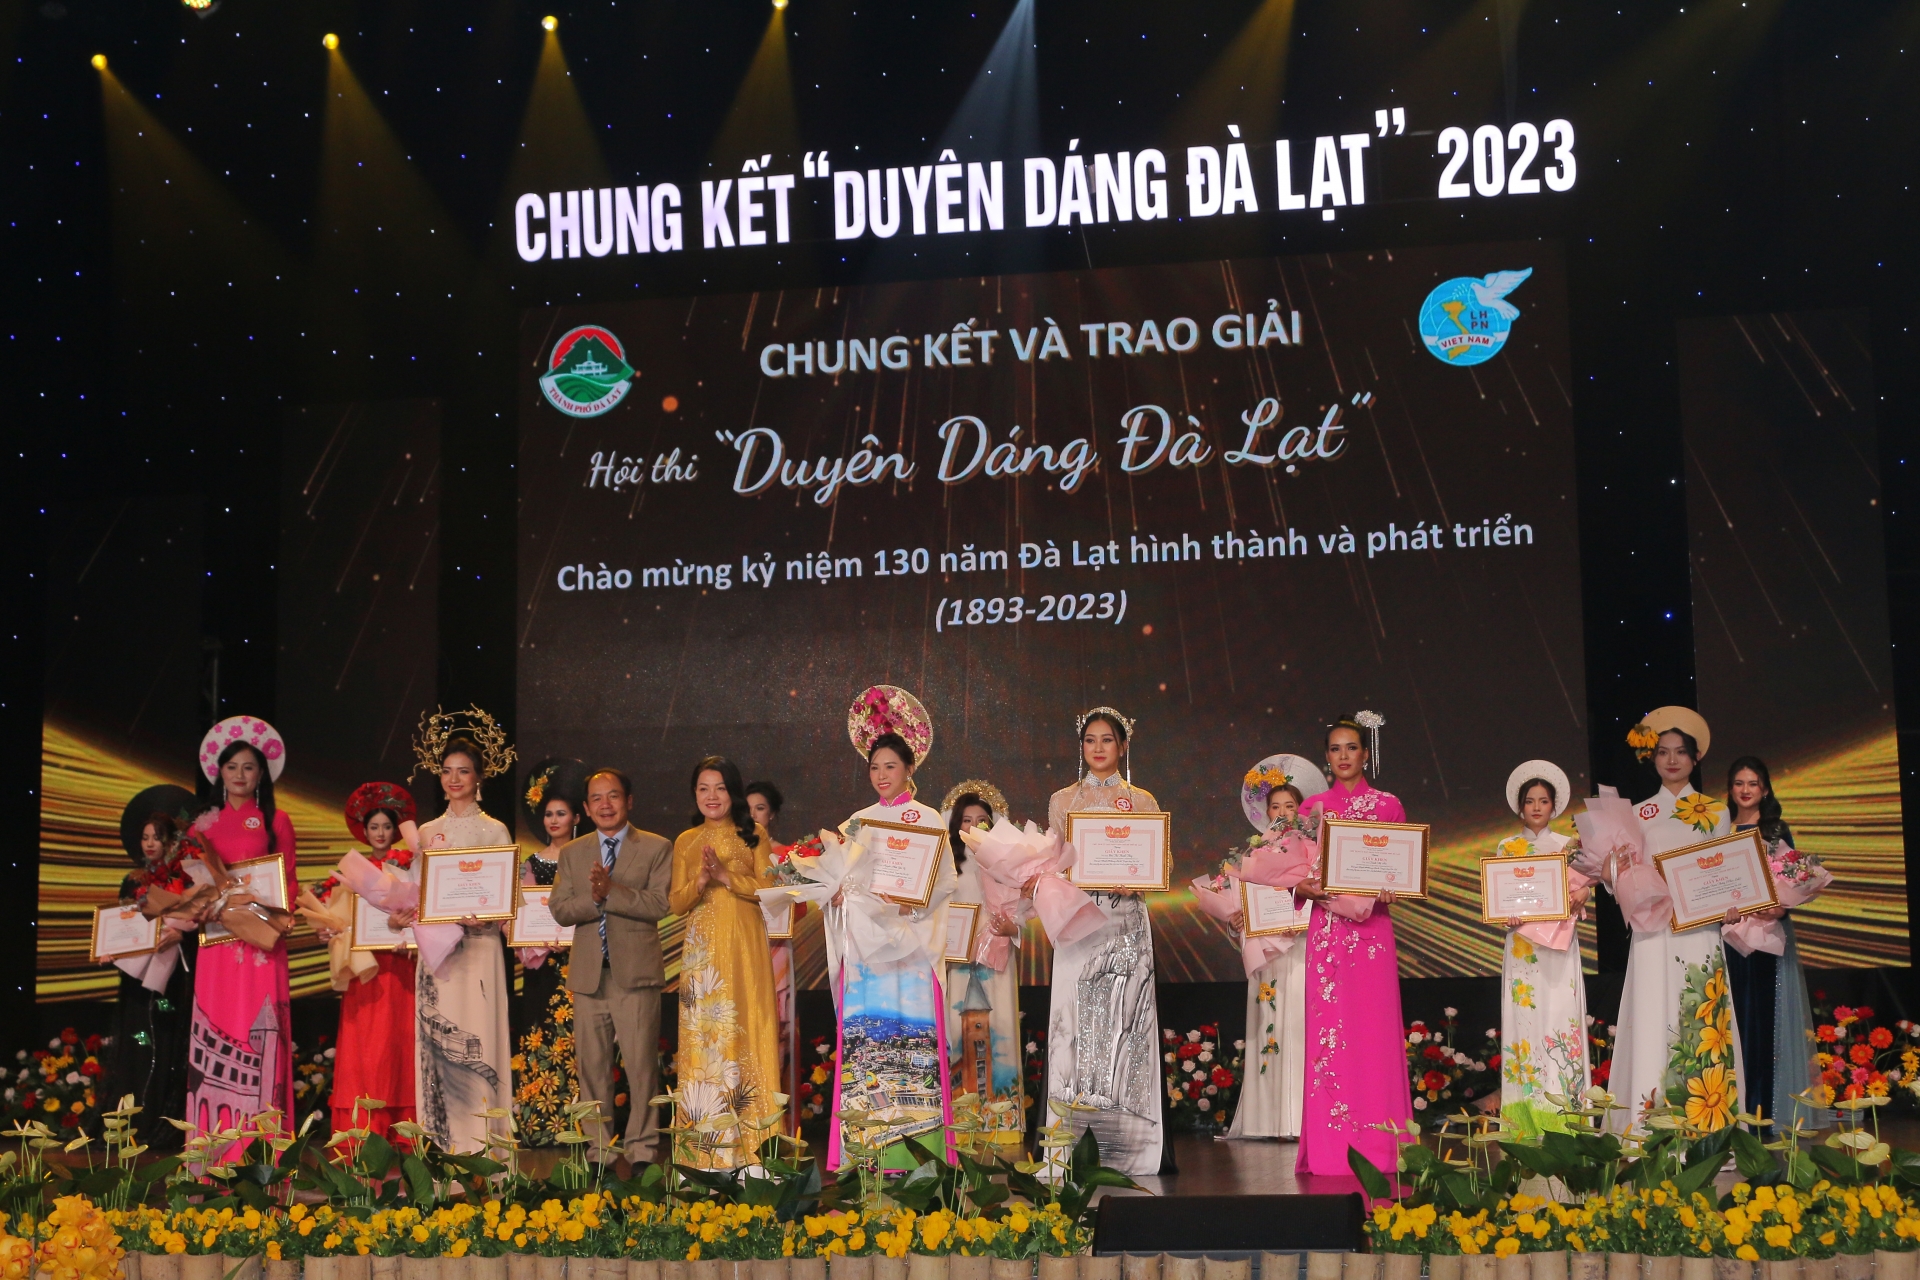 Nhà báo Hồ Lan – Tổng biên tập Báo Lâm Đồng và ông Trần Đức Nam – Trưởng Ban Tuyên giáo Thành ủy Đà Lạt trao giải khuyến khích cho các thí sinh